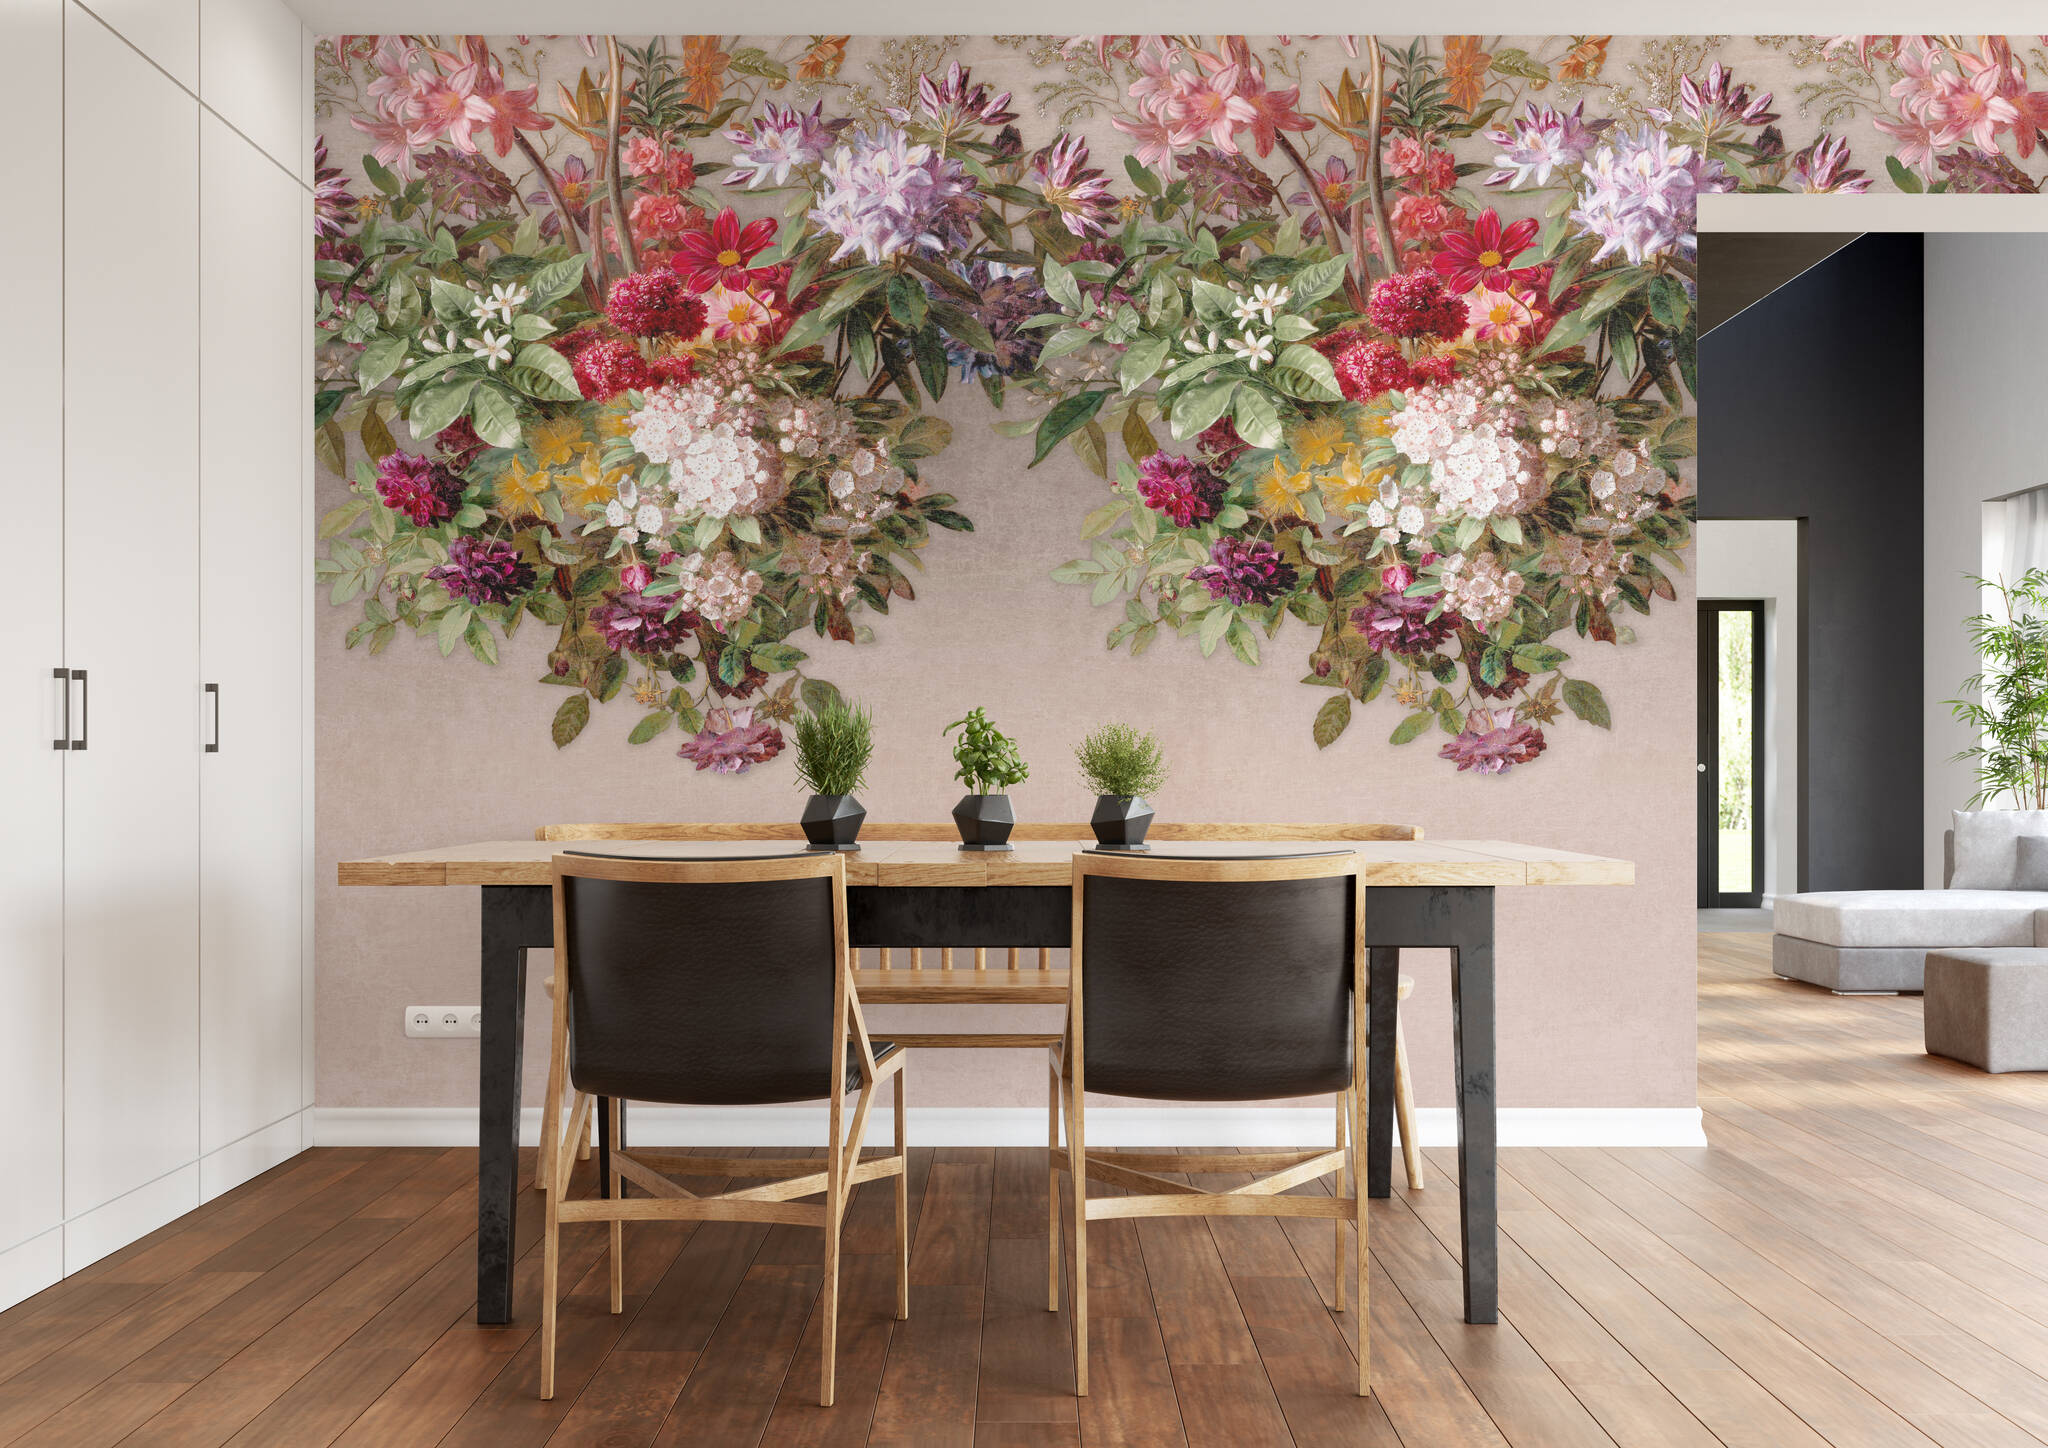 Esszimmer mit Wandbild - Blütenpracht in kräftigen Farben auf beigem Hintergrund auf der oberen Hälfte der Wand